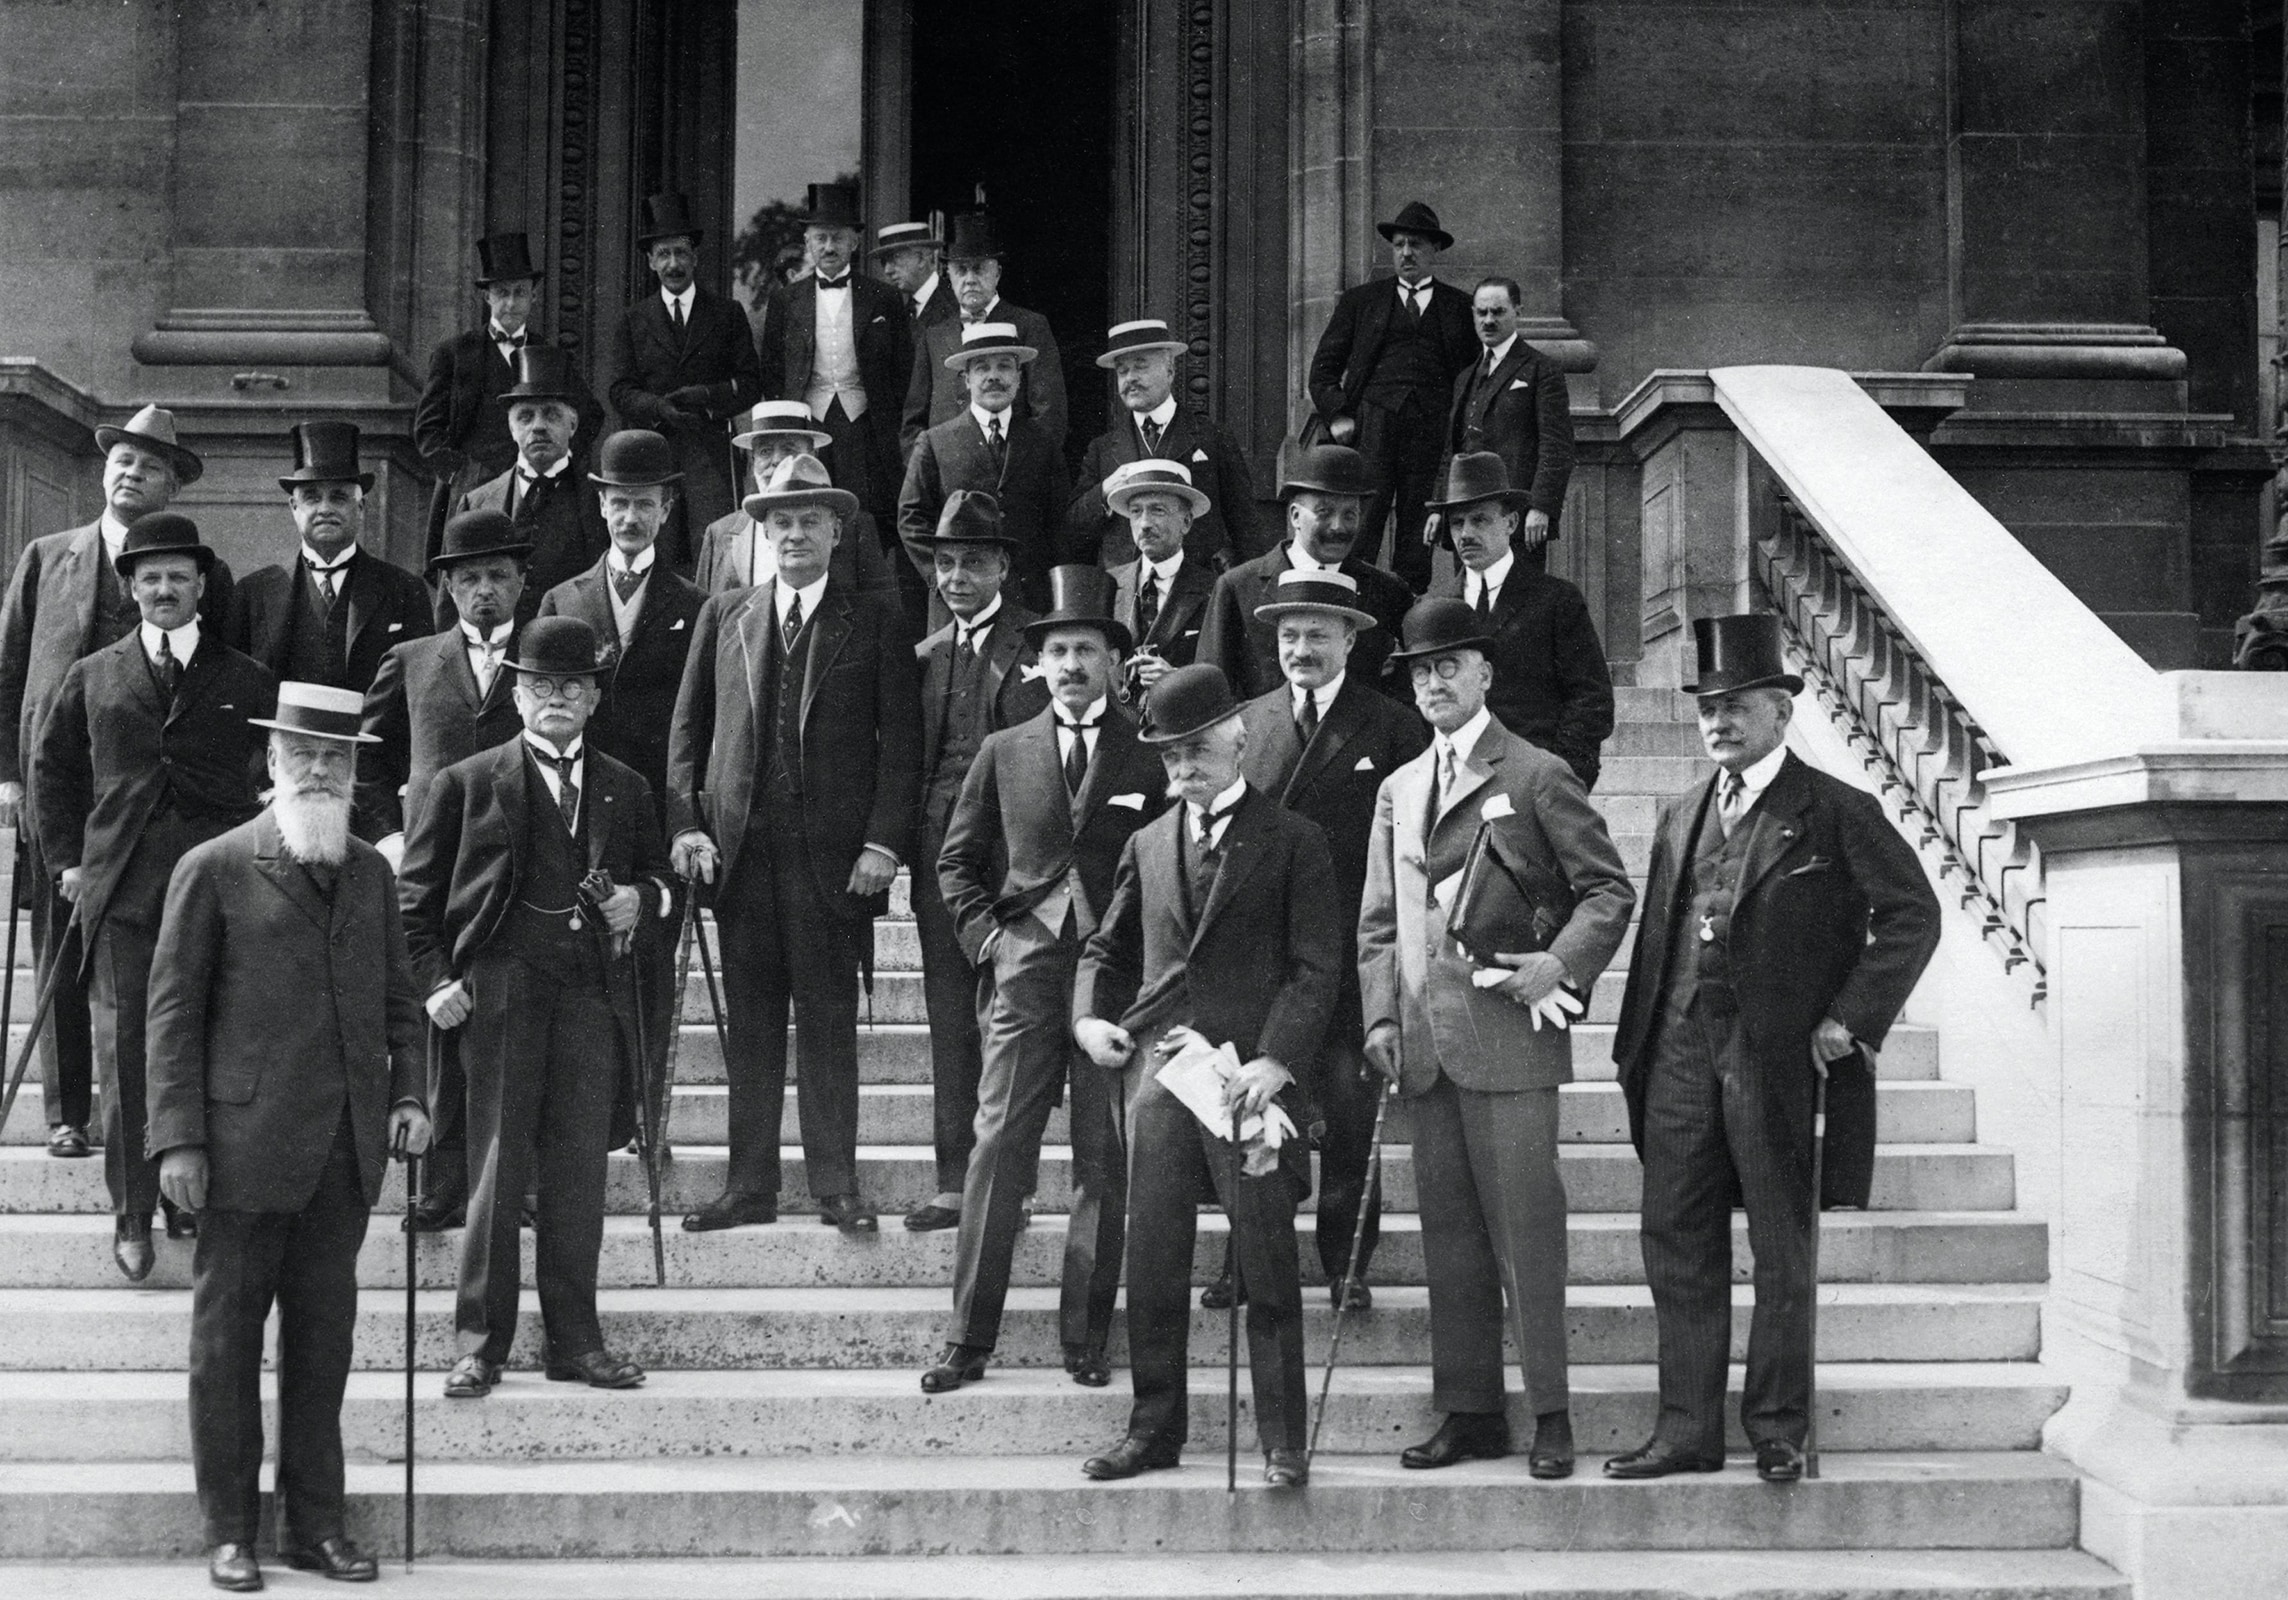 23rd IOC Session, Paris, 1924 - Pierre de COUBERTIN, IOC President with the IOC Membersat the Palais du Louvre.